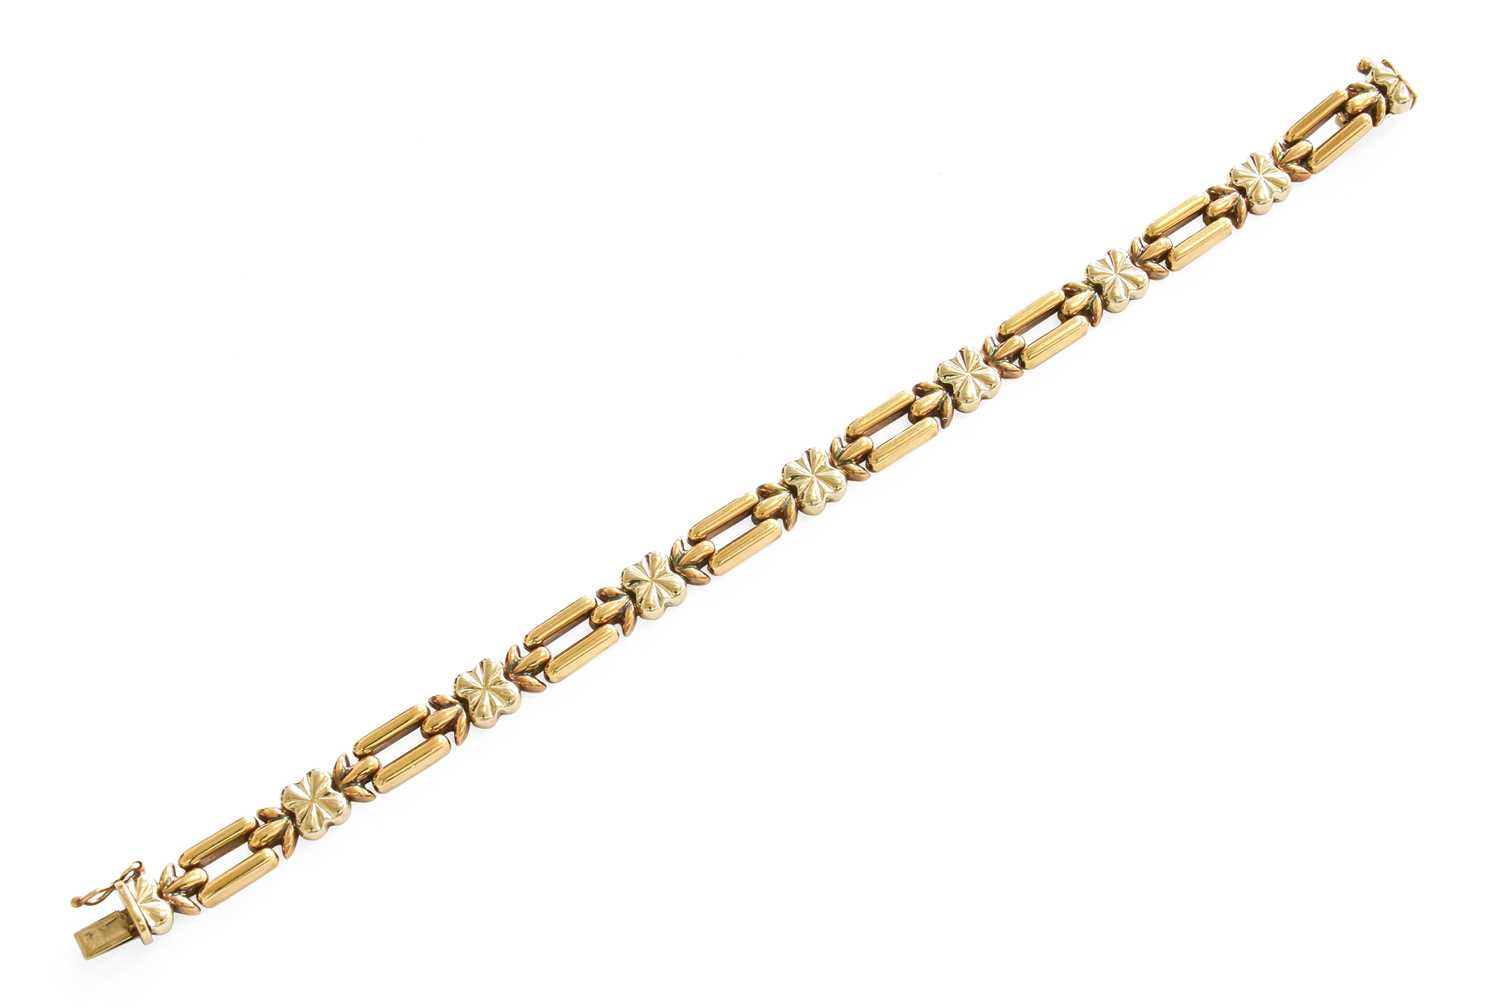 A 9 Carat Bi-Colour Gold Fancy Link Bracelet, length 18.3cm Gross weight 11.3 grams.